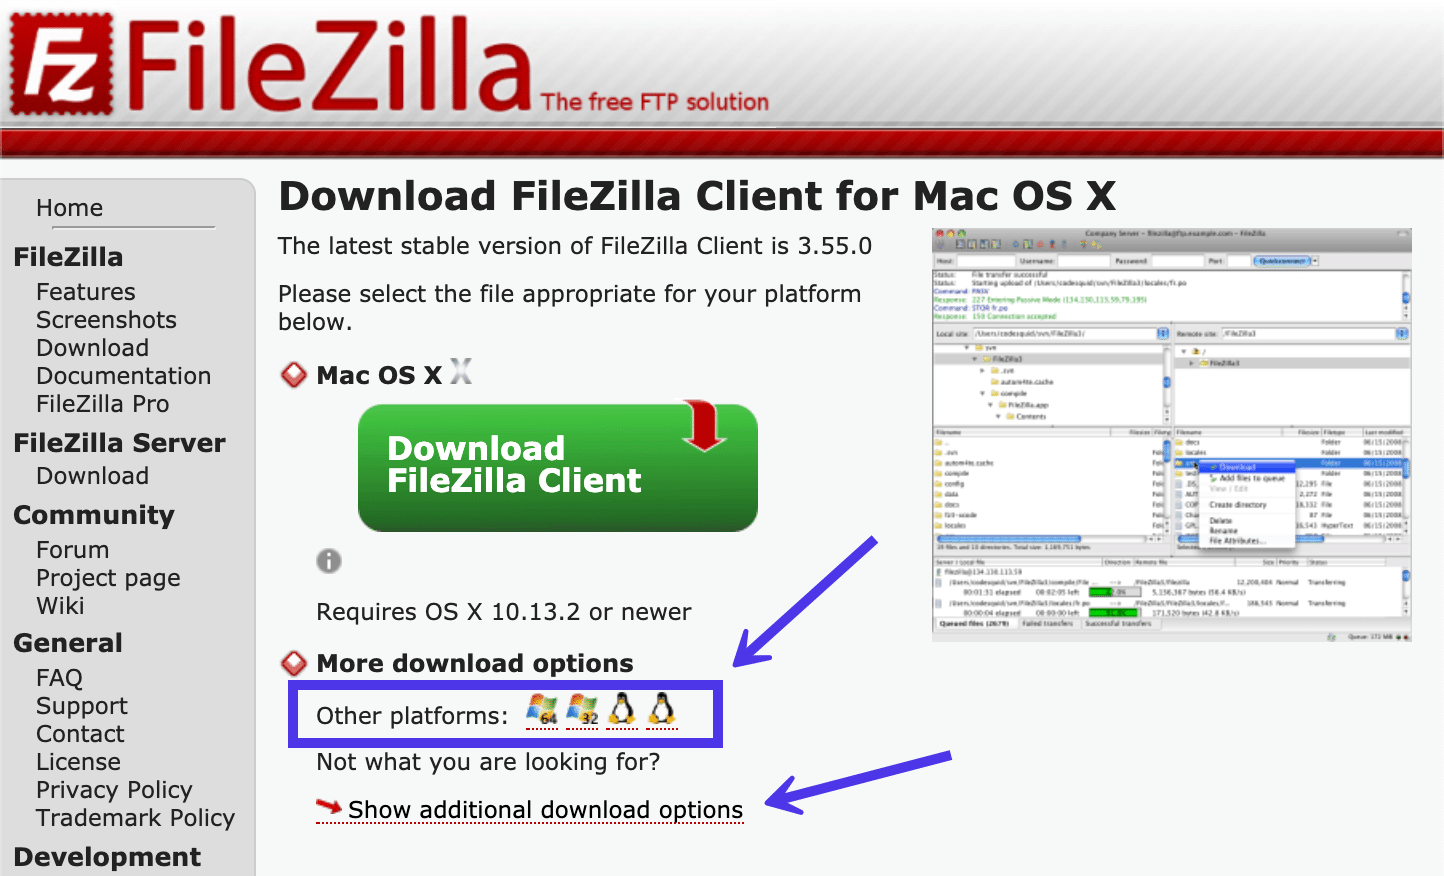 Je kan FileZilla versies voor andere platforms bekijken.